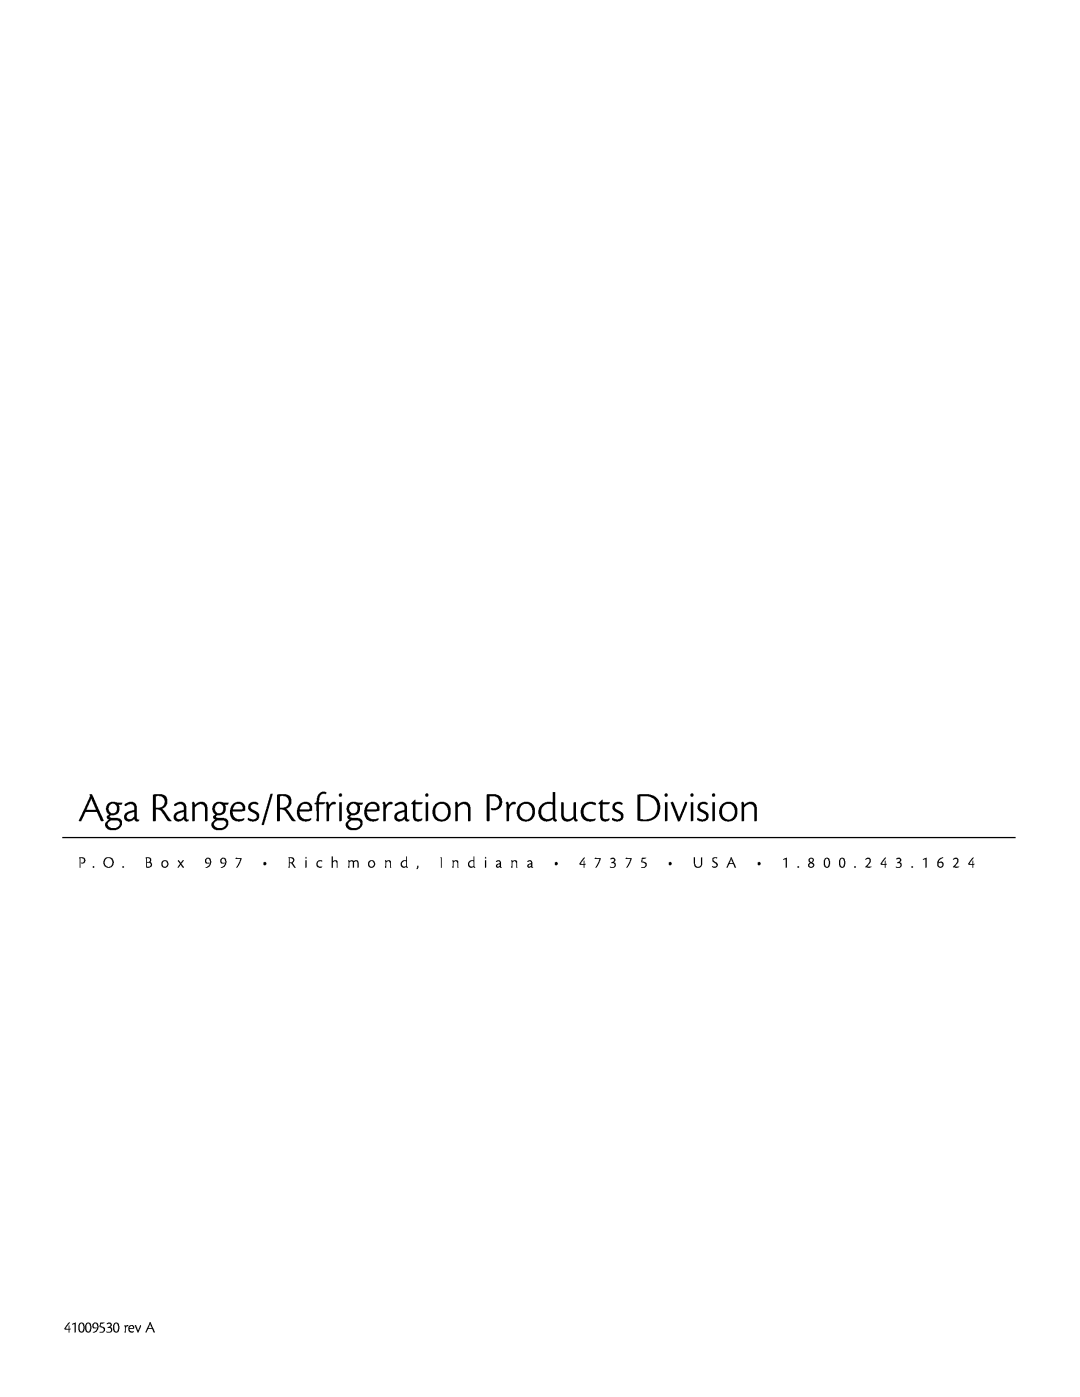 Aga Ranges 60RDA 115V manual Aga Ranges/Refrigeration Products Division, rev A 